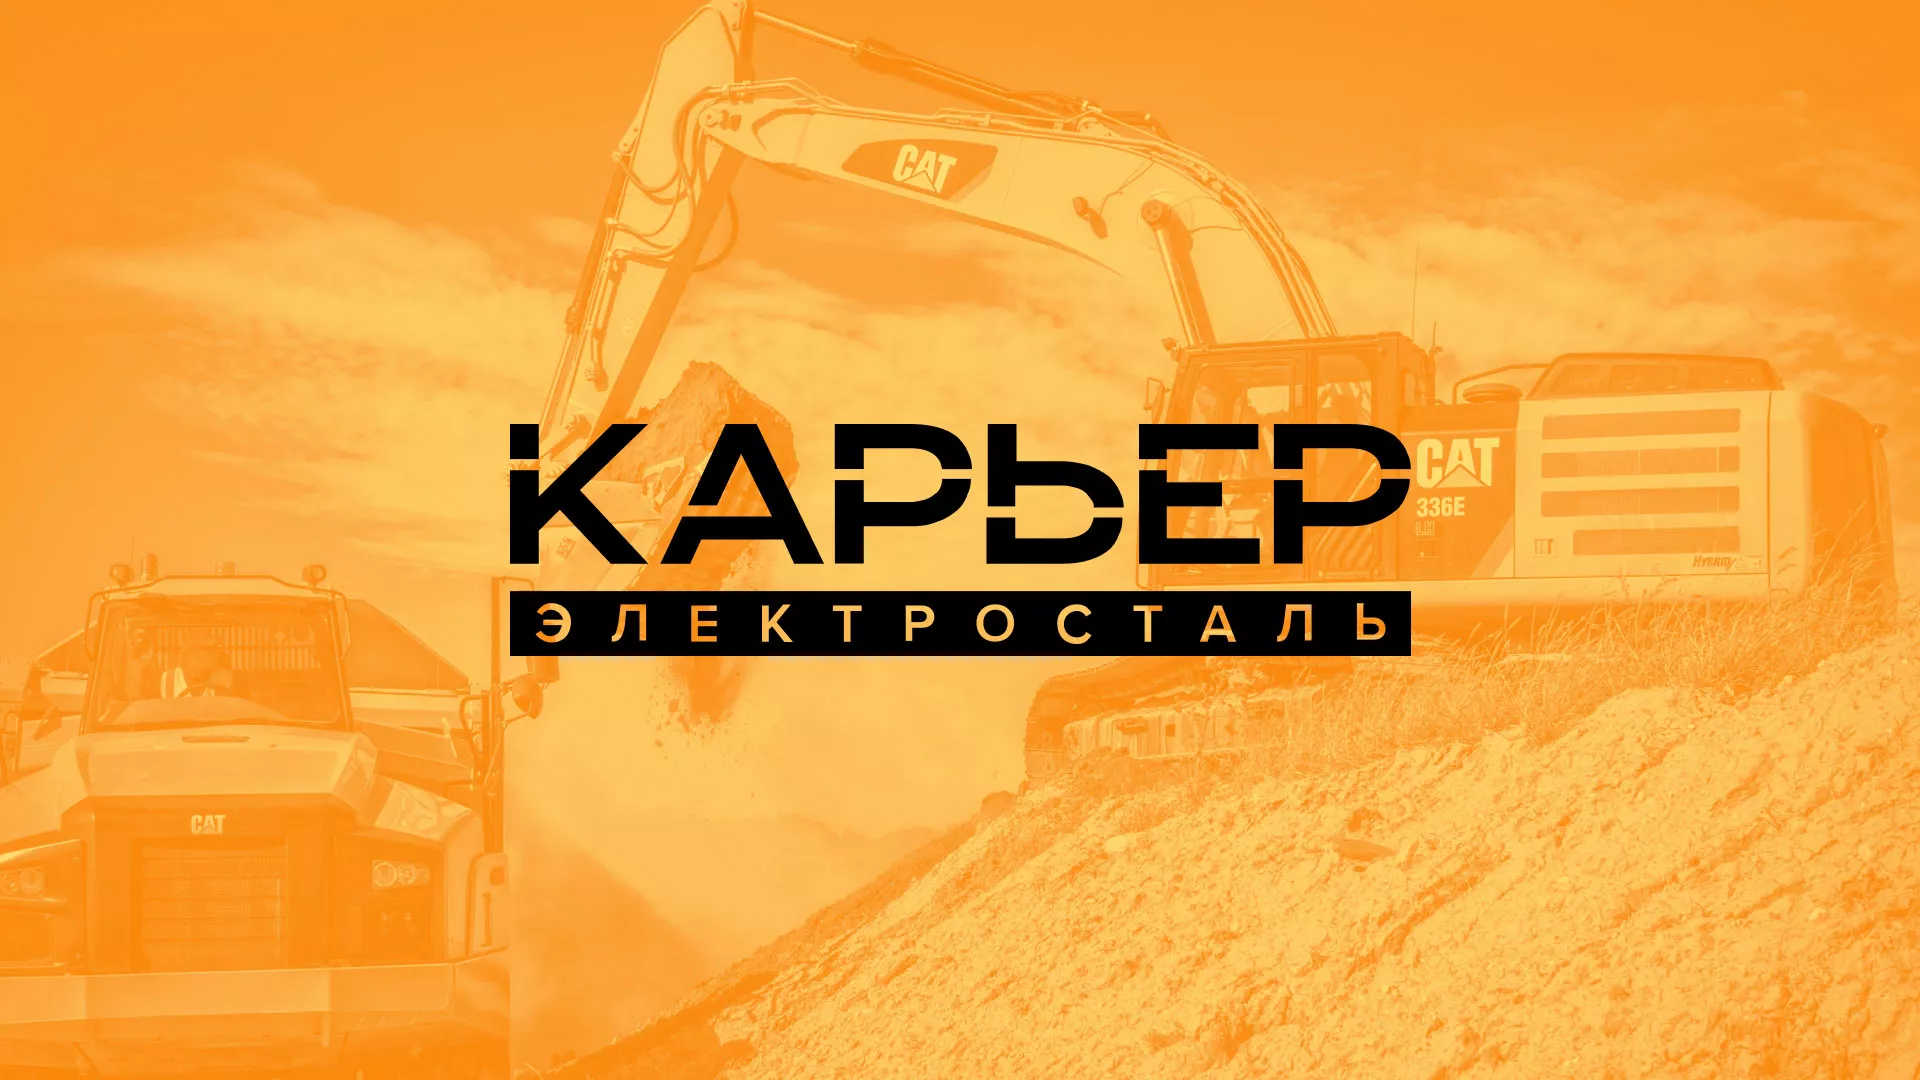 Разработка сайта по продаже нерудных материалов «Карьер» в Железноводске